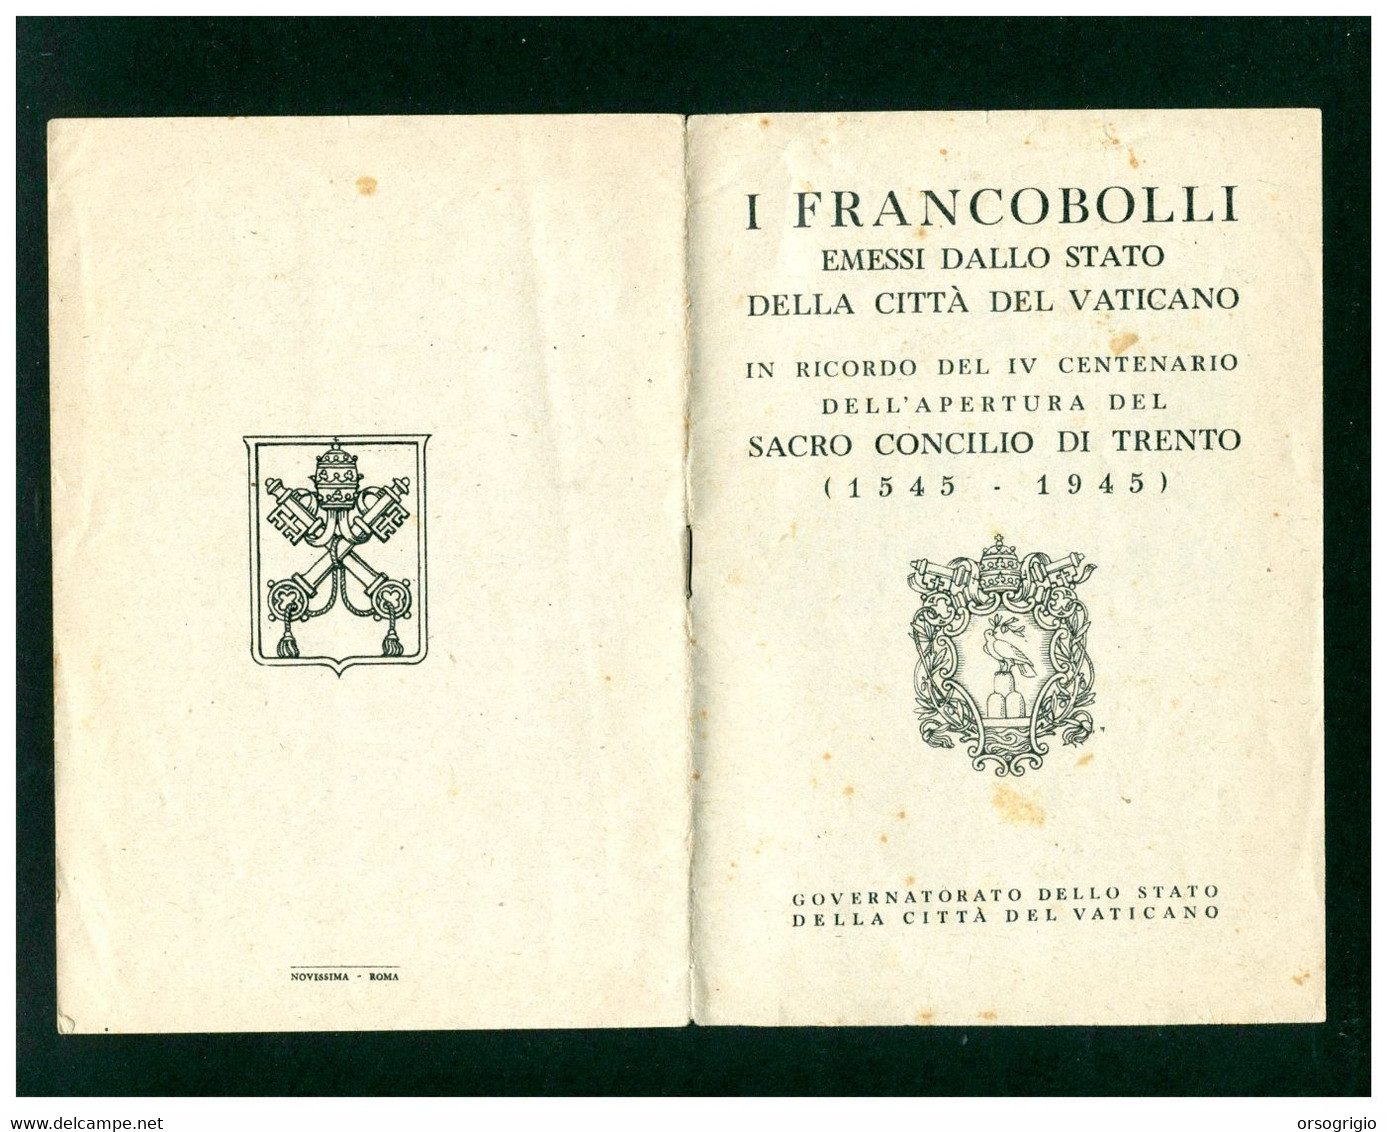 VATICANO - Libretto Dei FRANCOBOLLI EMESSI IN RICORDO DELLA APERTURA SACRO CONCILIO DI TRENTO 1945 - Abarten